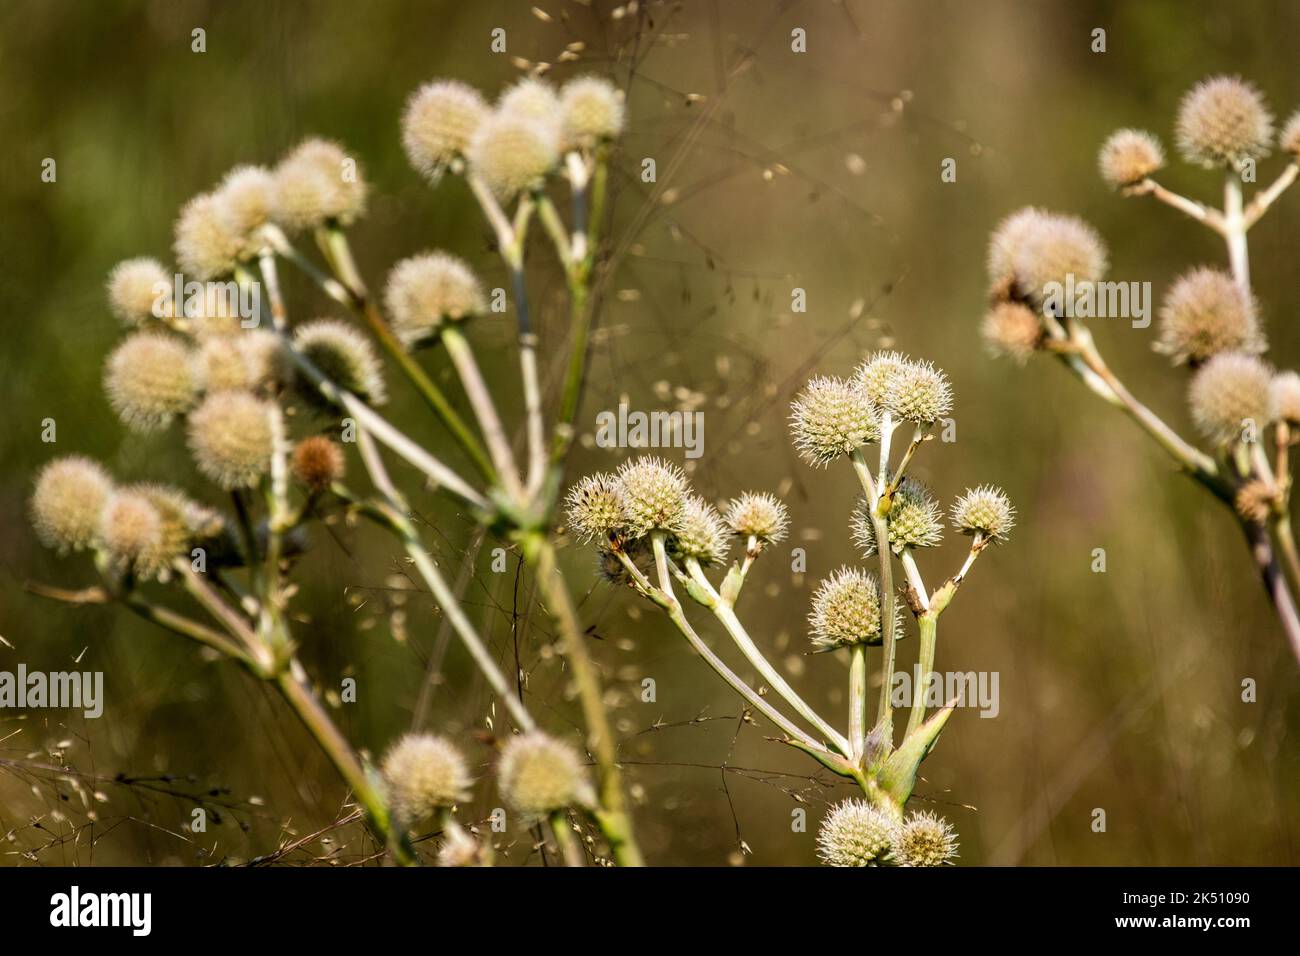 Flowers of Allium carinatum Stock Photo